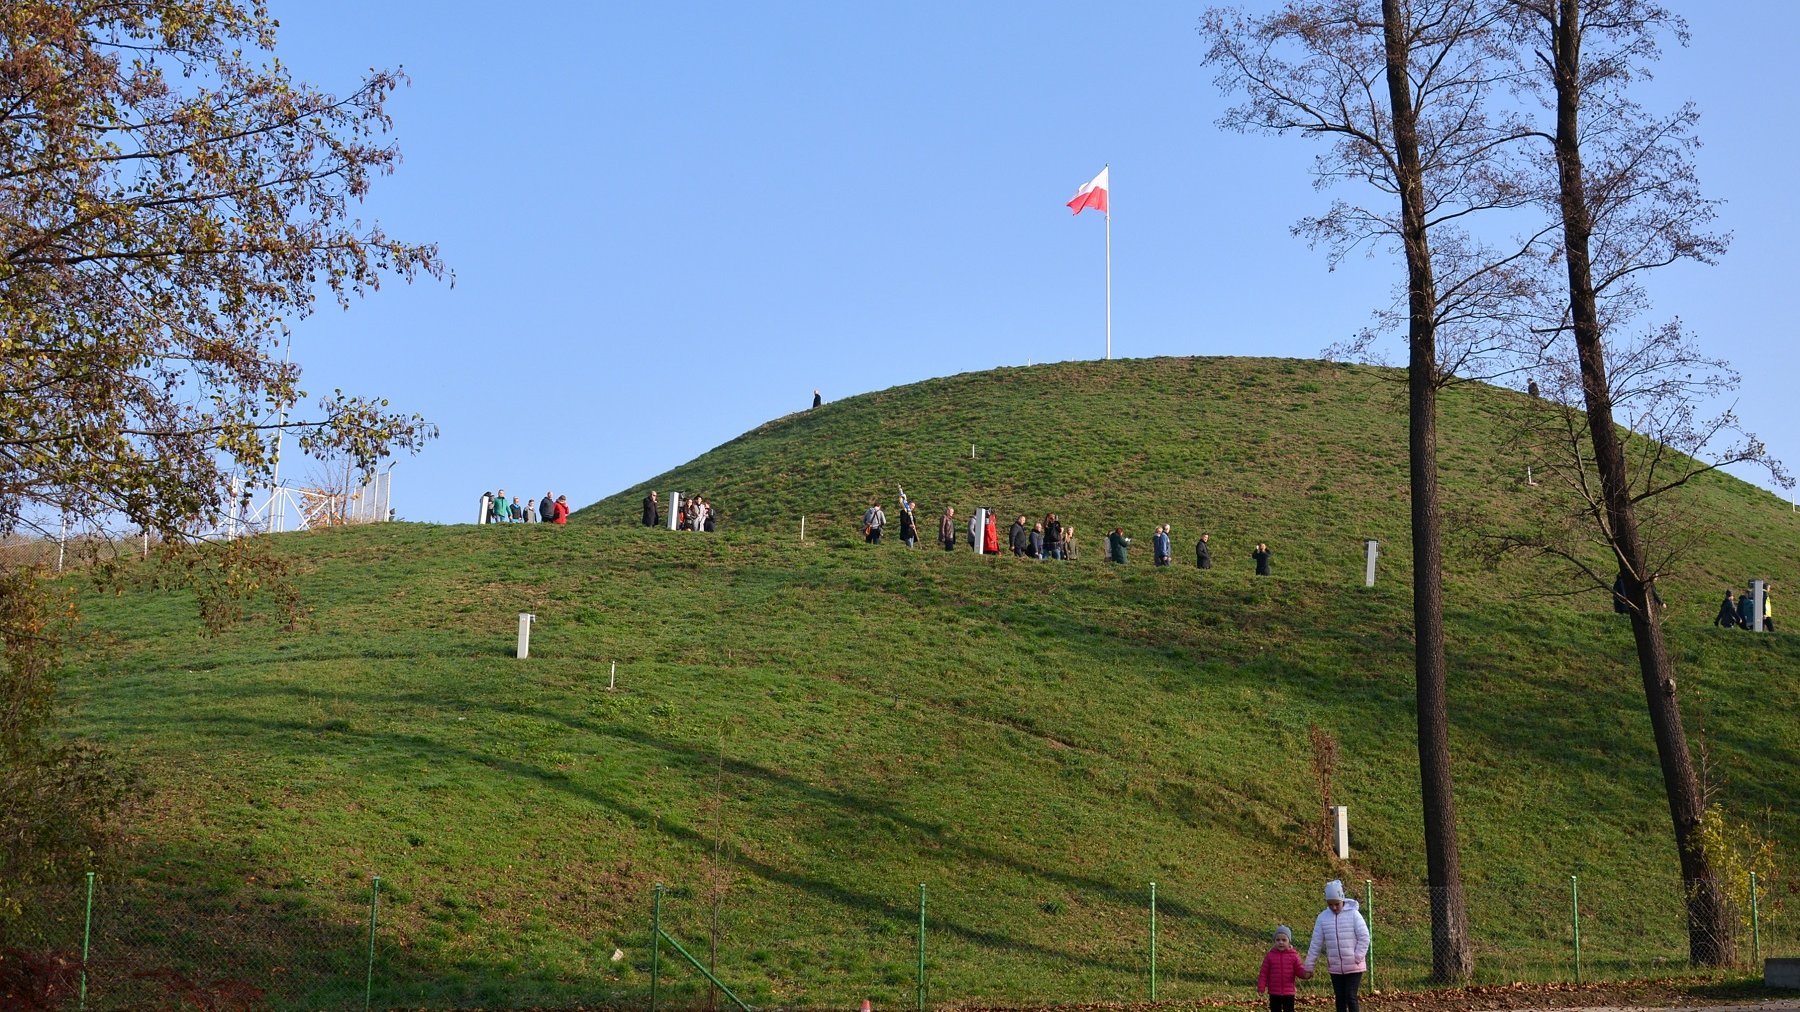 Galeria zdjęć przedstawia kopiec ziemny porośnięty trawą, na jego szczycie powiewa flaga Polski. - grafika artykułu